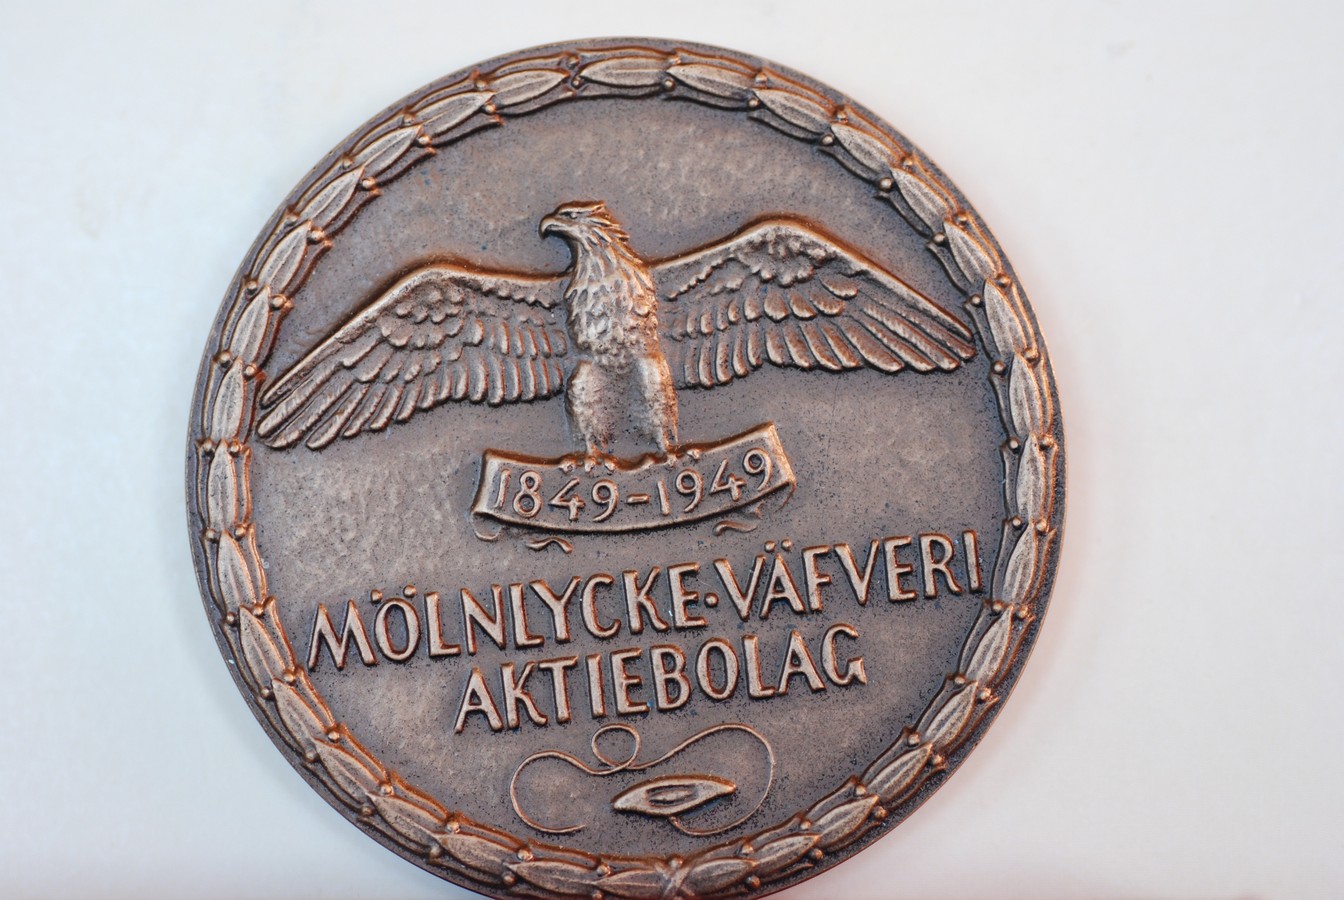 Mølnlycka Vafveri Aktiebolag 1849-1949